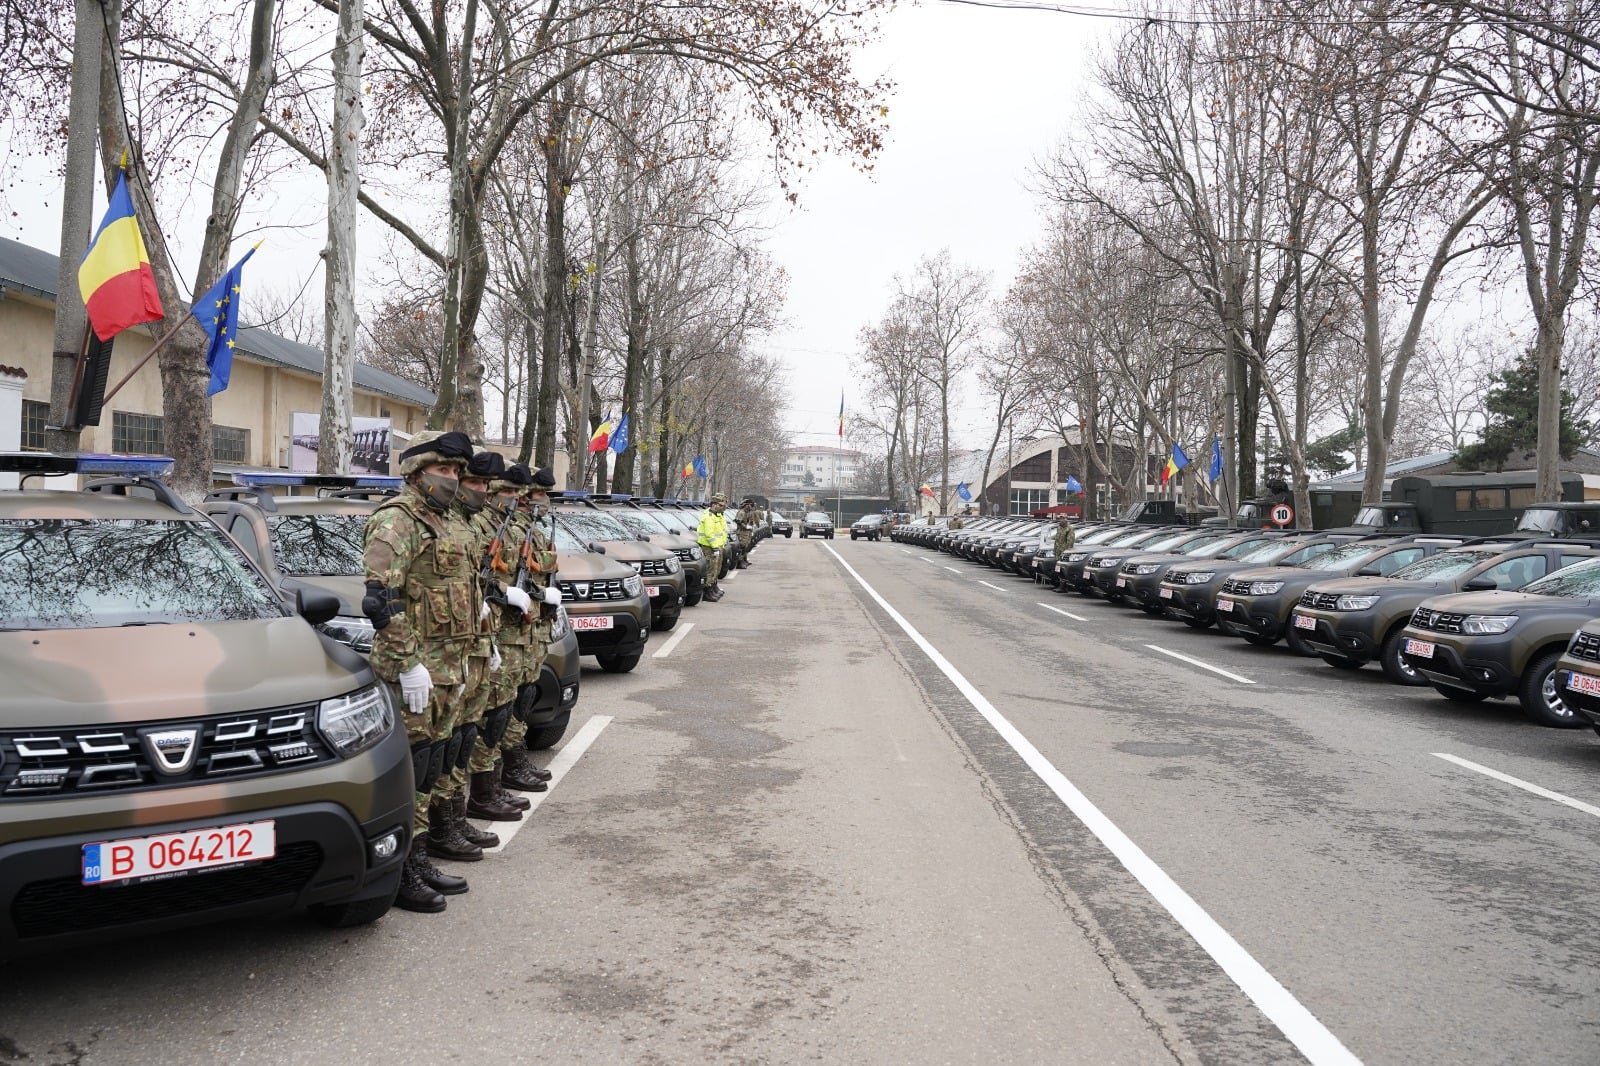  FOTO: 74 de autoturisme românești de teren pentru misiunile de poliție militară